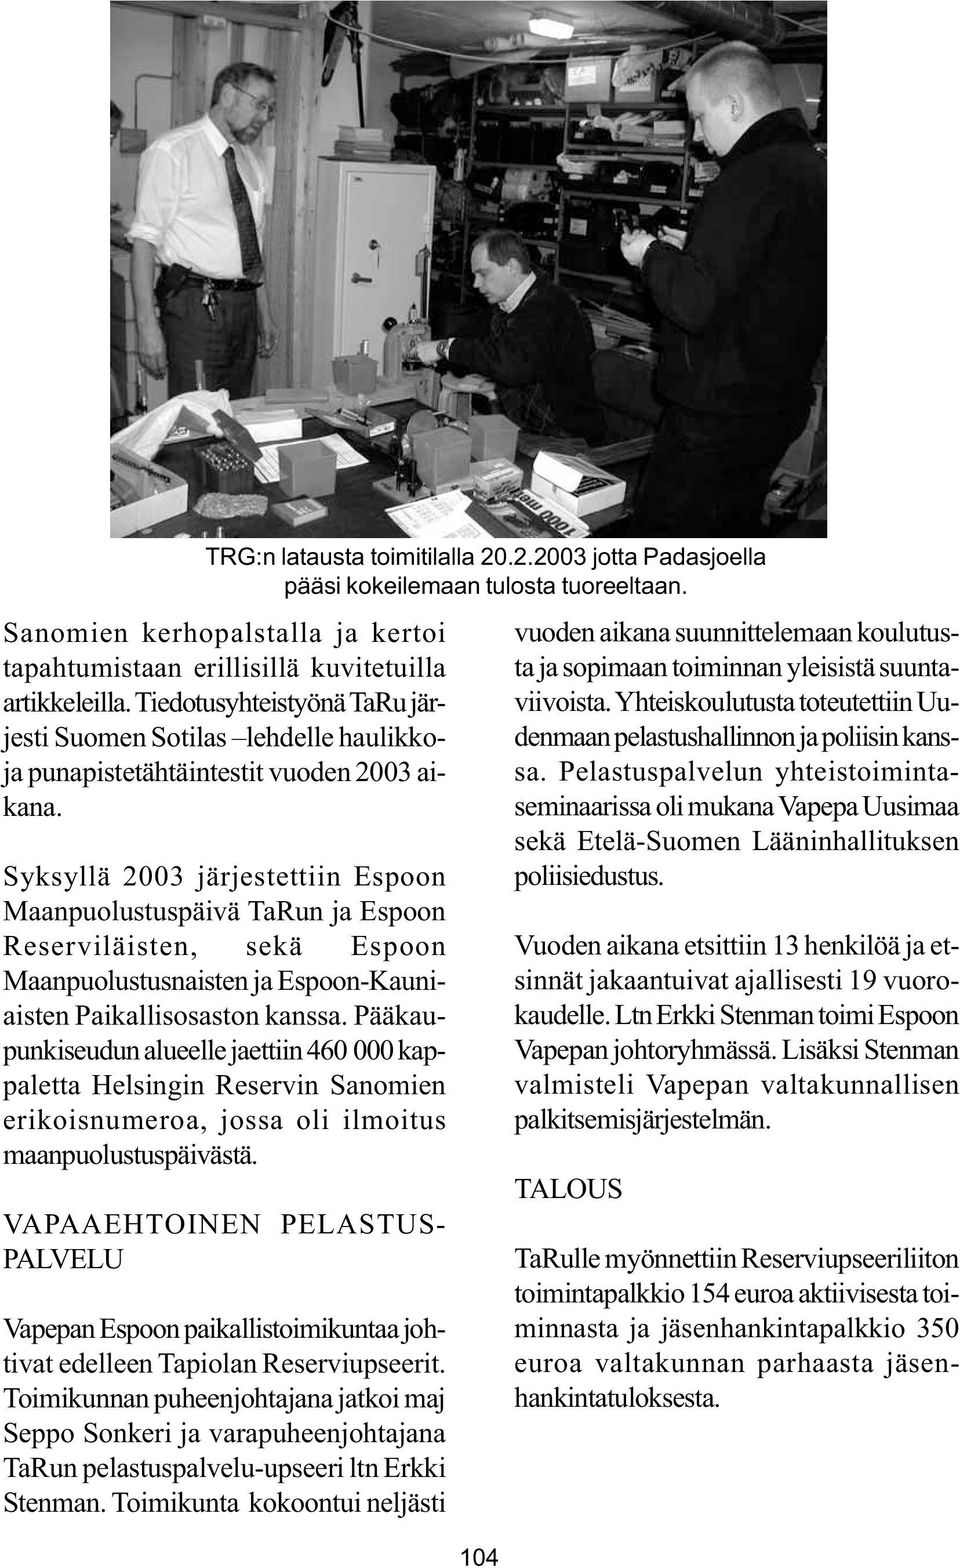 Syksyllä 2003 järjestettiin Espoon Maanpuolustuspäivä TaRun ja Espoon Reserviläisten, sekä Espoon Maanpuolustusnaisten ja Espoon-Kauniaisten Paikallisosaston kanssa.